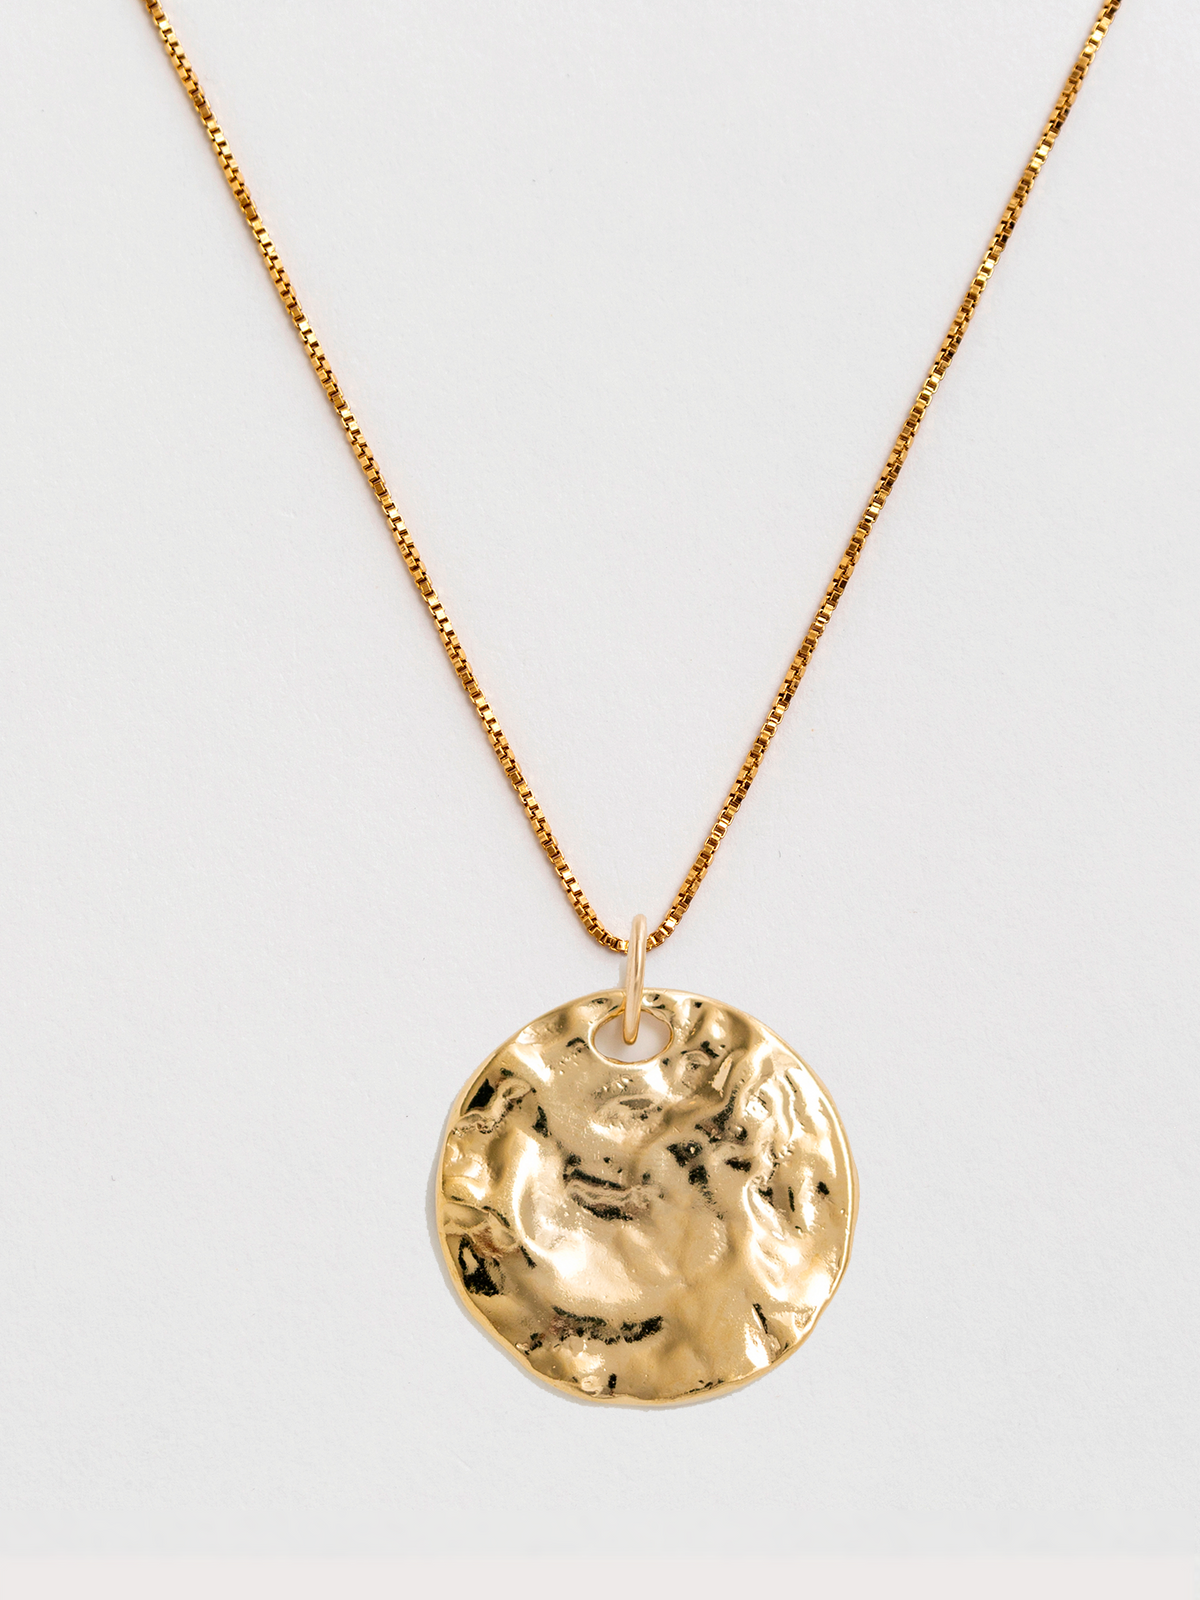 Danielle Gold Pendant Necklace